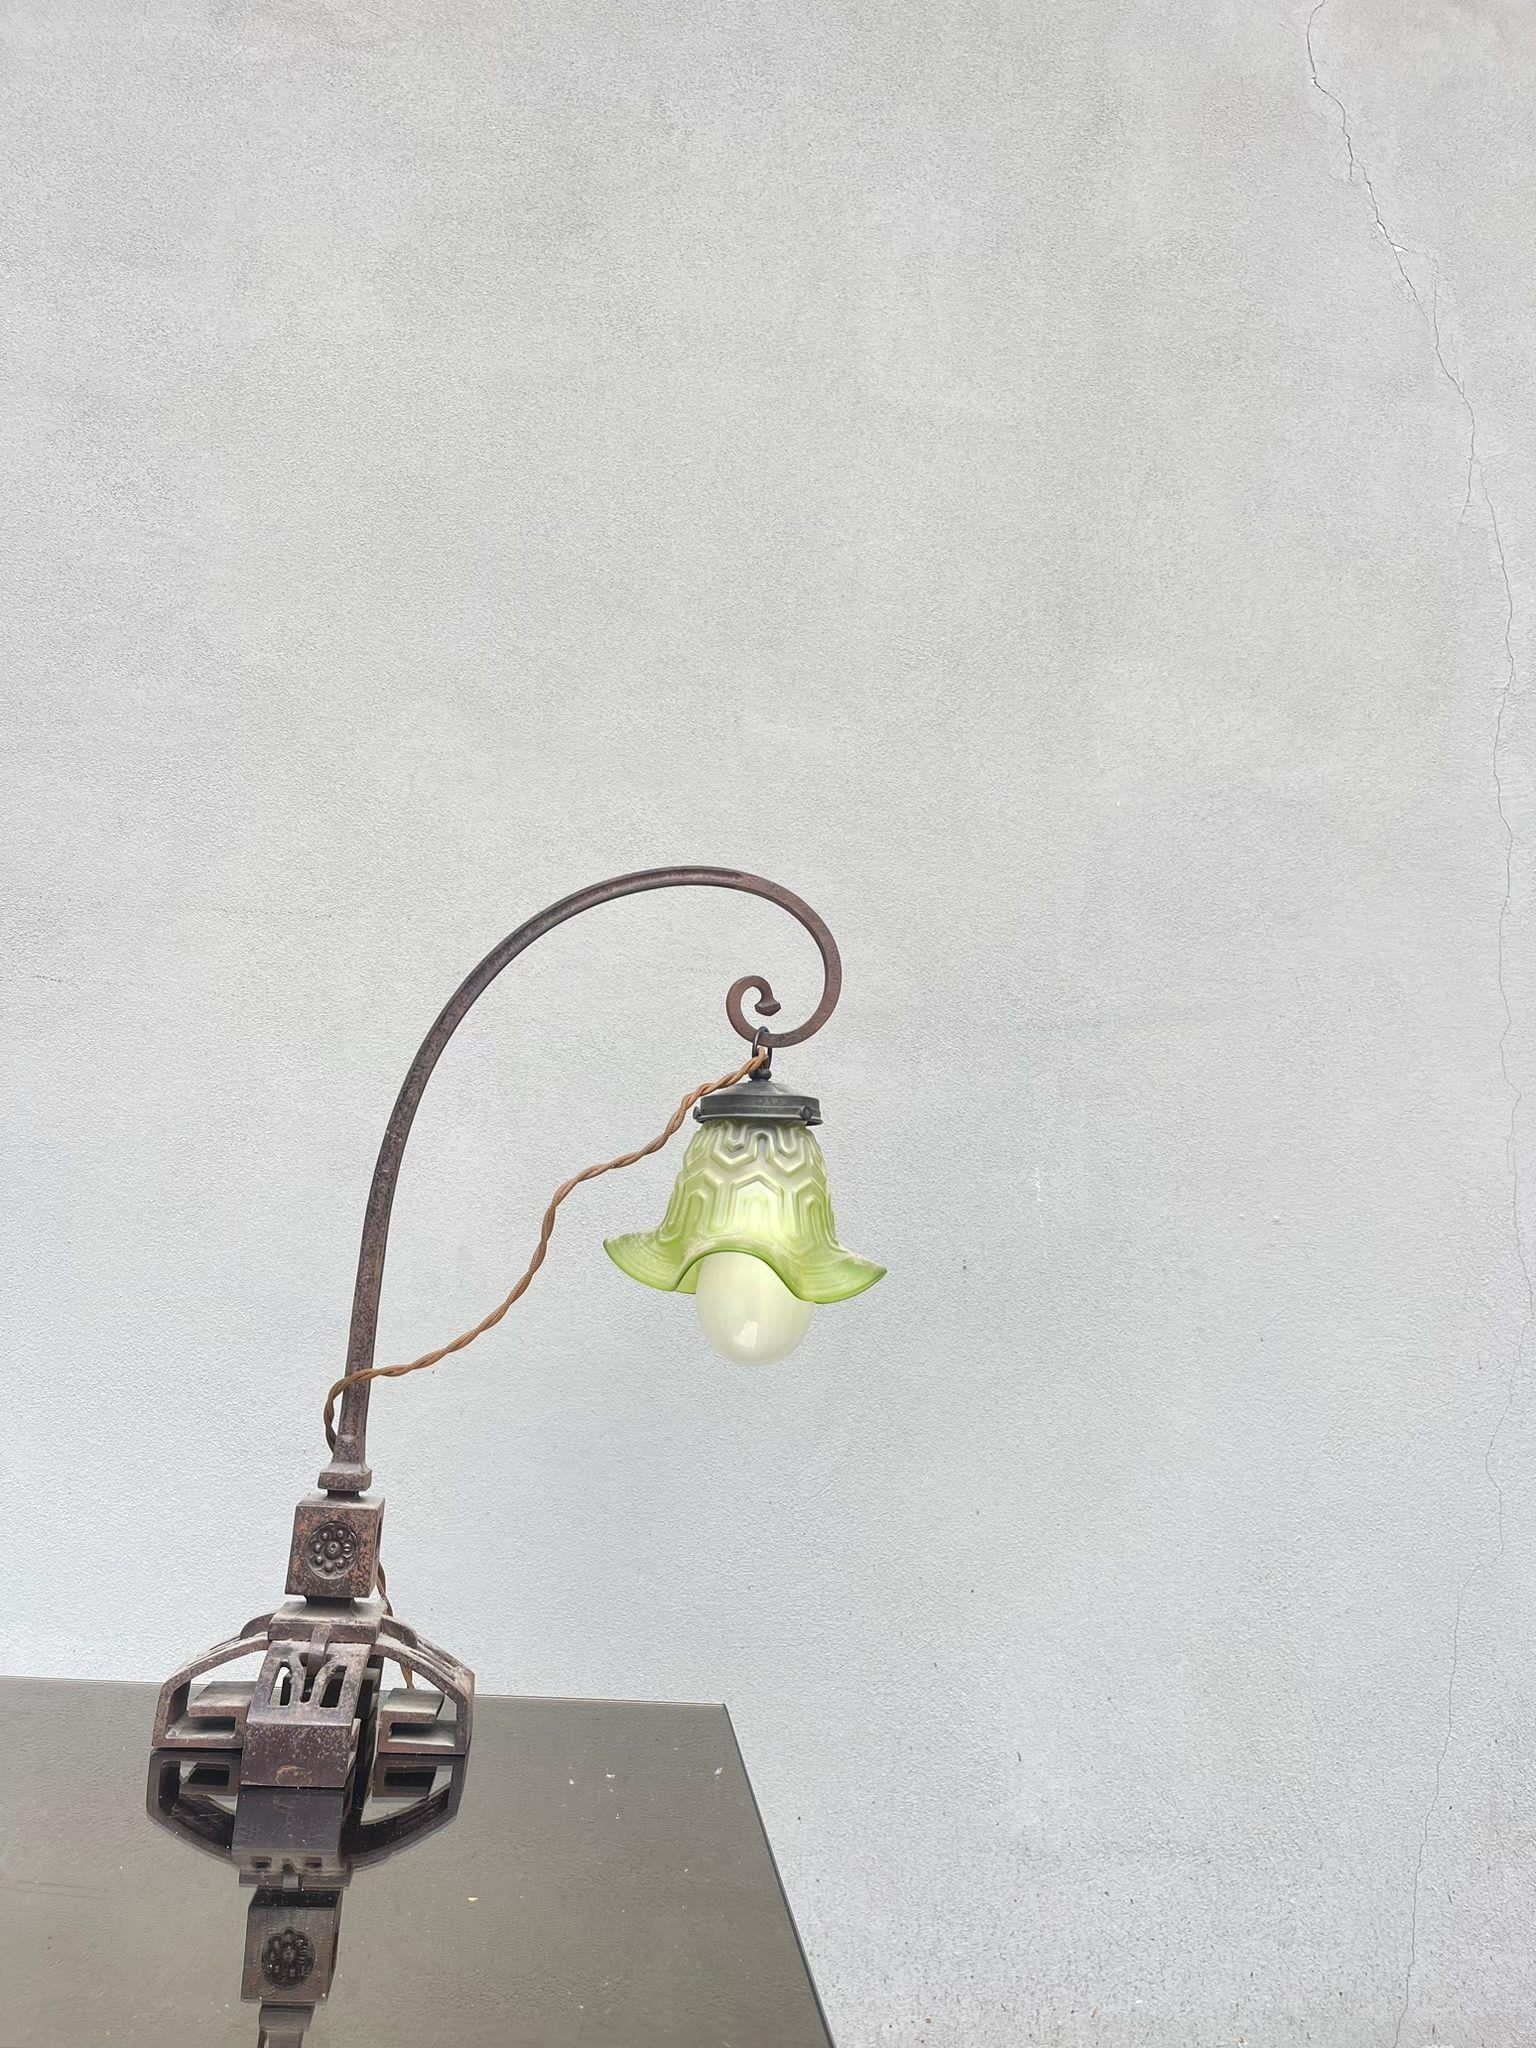 Lampada Liberty da Tavolo

Descrizione:
Tafellampe Design Liberty, hergestellt in Francia in der ersten Hälfte des XX.
Die Lampe ist in gutem Zustand, wie auf dem Foto zu sehen ist, das Hauptgebäude ist aus Eisen mit grüner